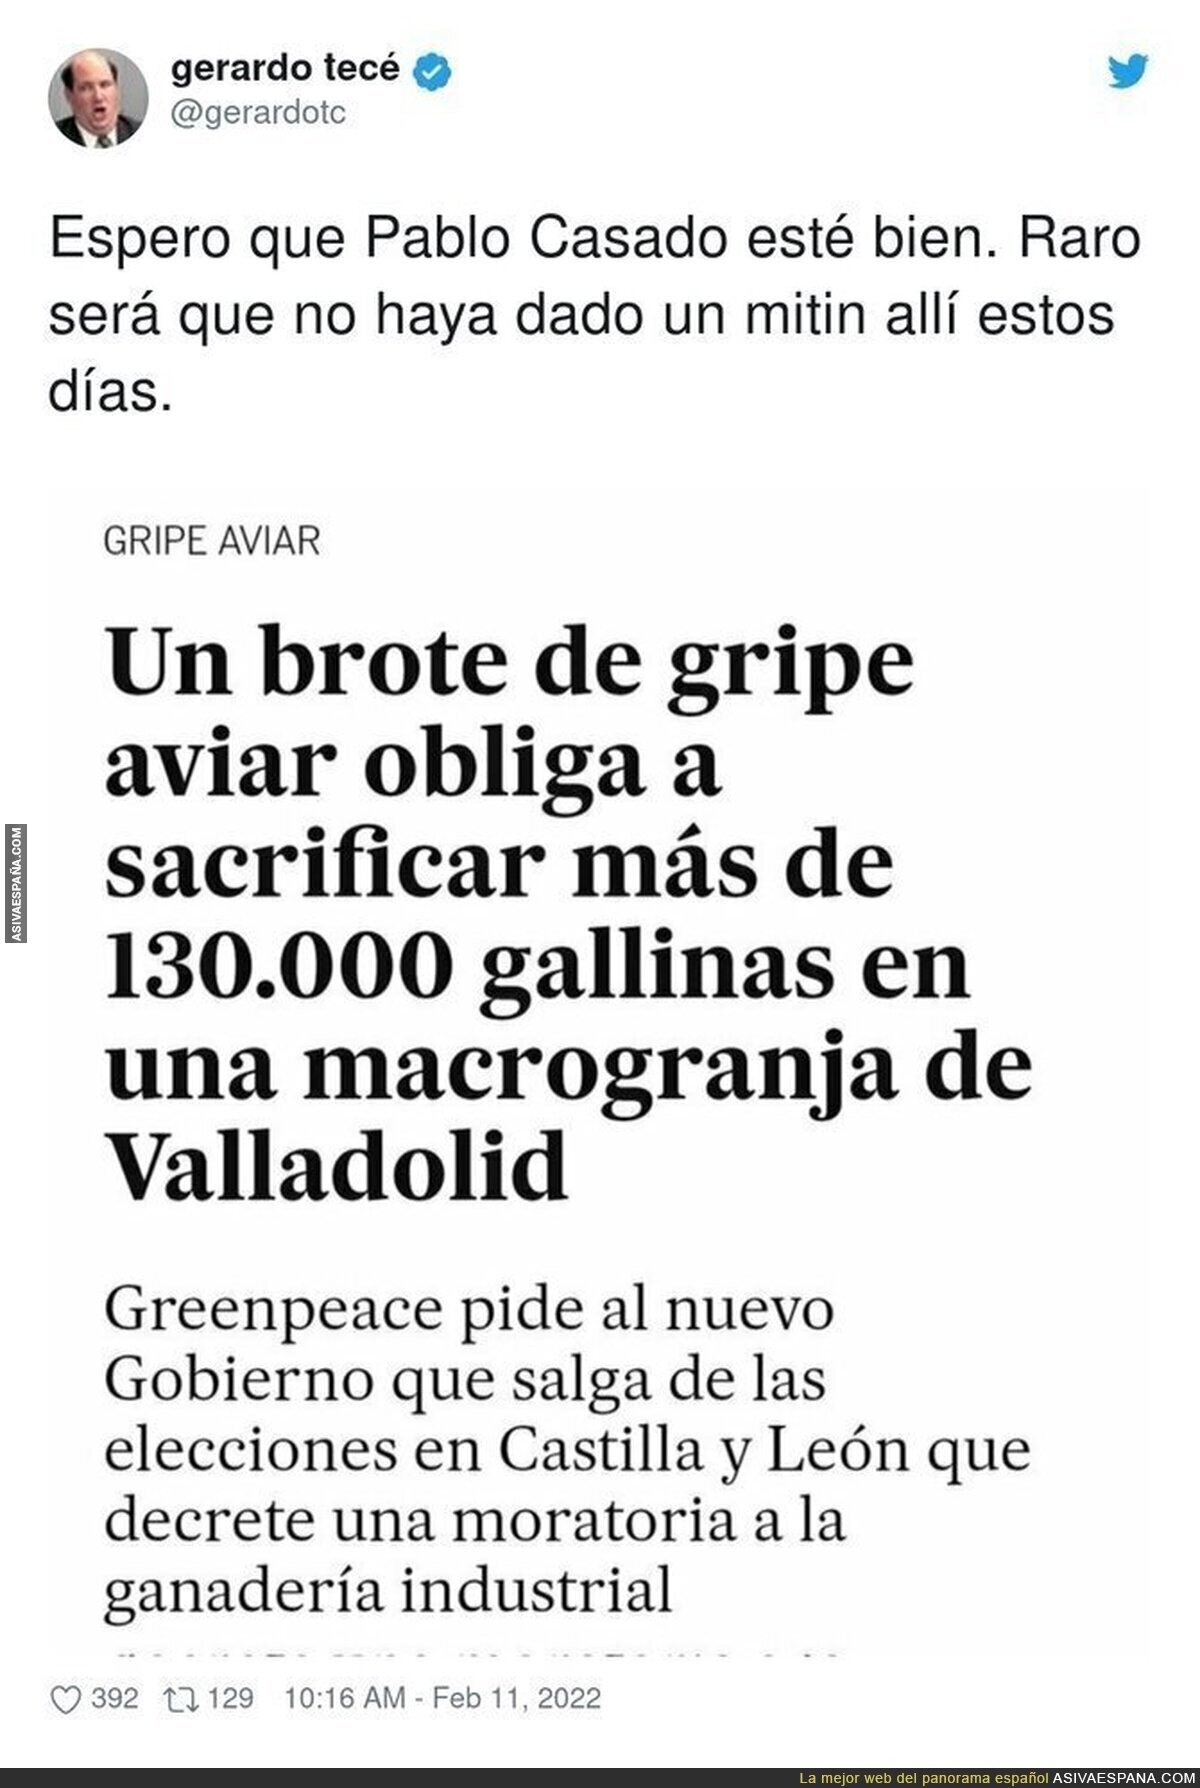 Caos en esta macrogranja de Valladolid